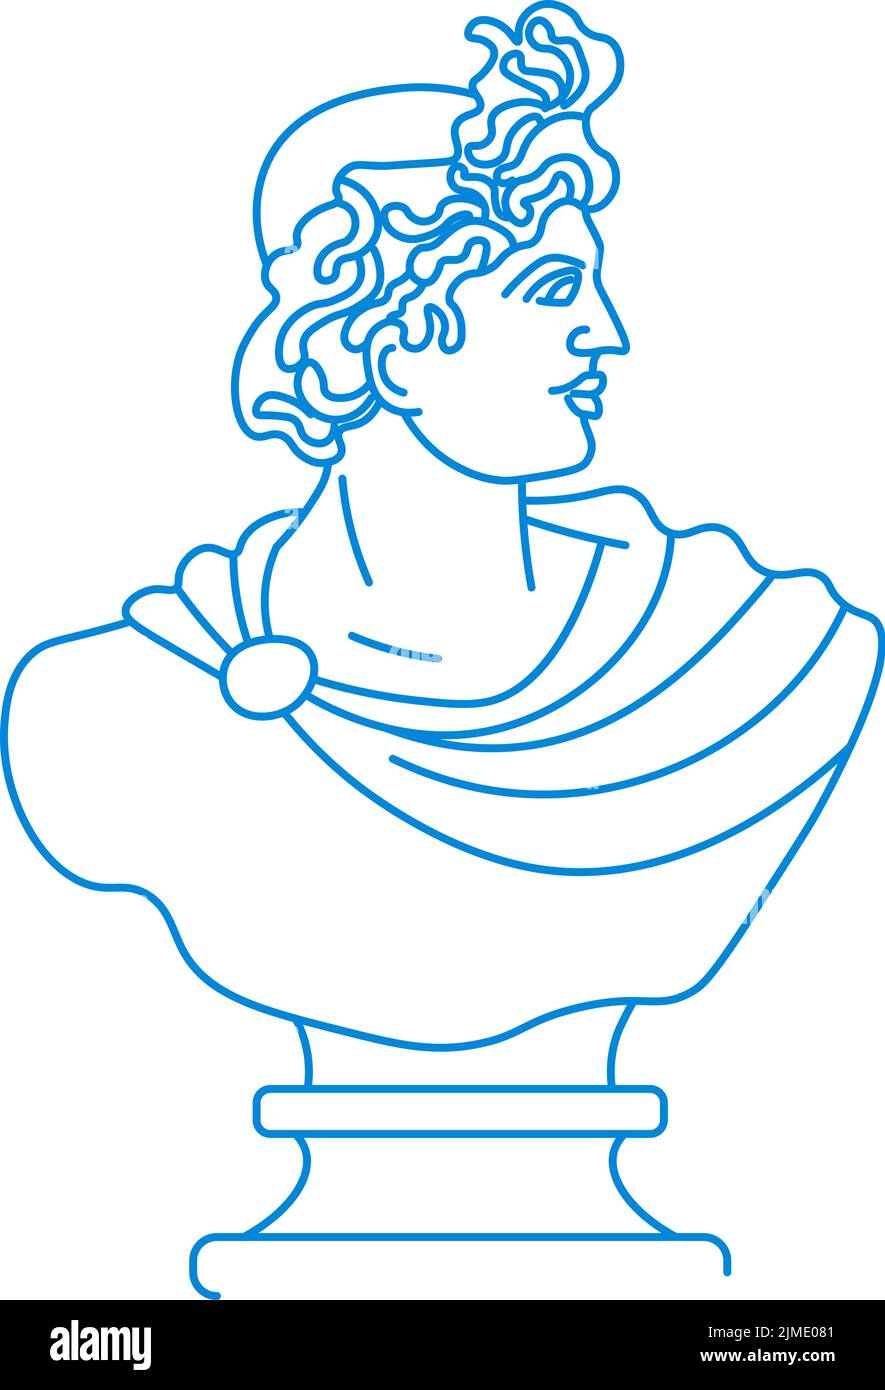 Busto del hombre, cultura escultórica griega o romana Ilustración del Vector